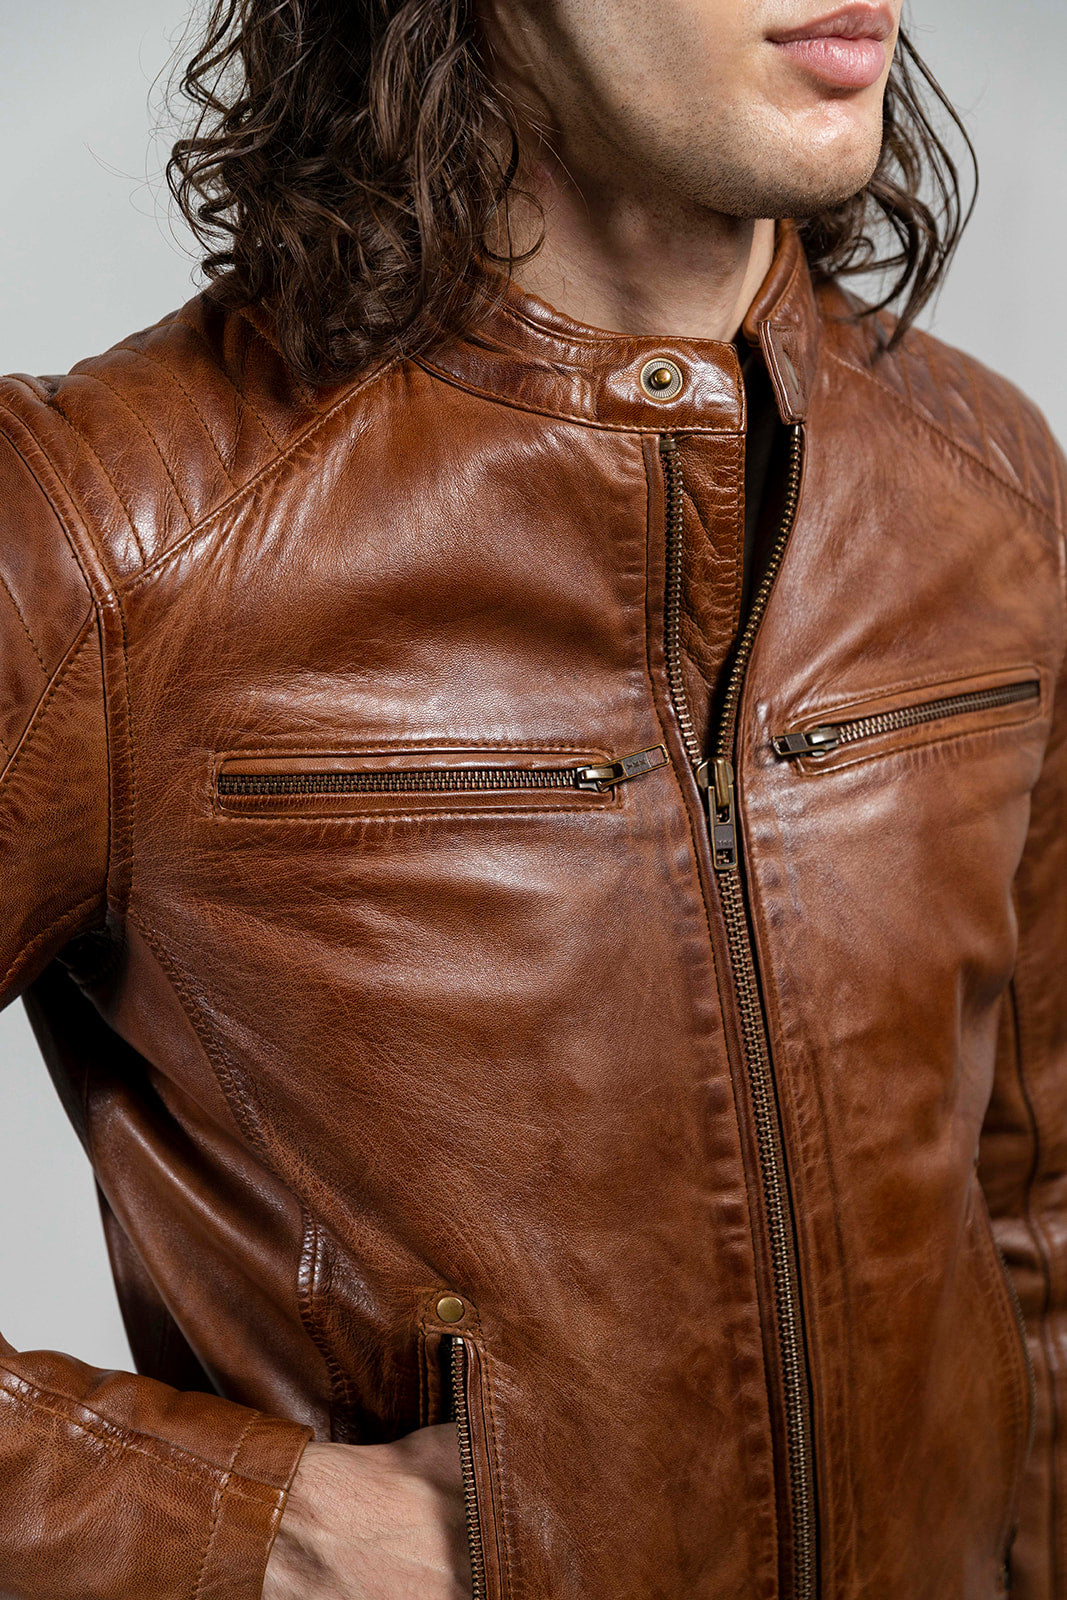 Zack Men's Fashion Leather Jacket